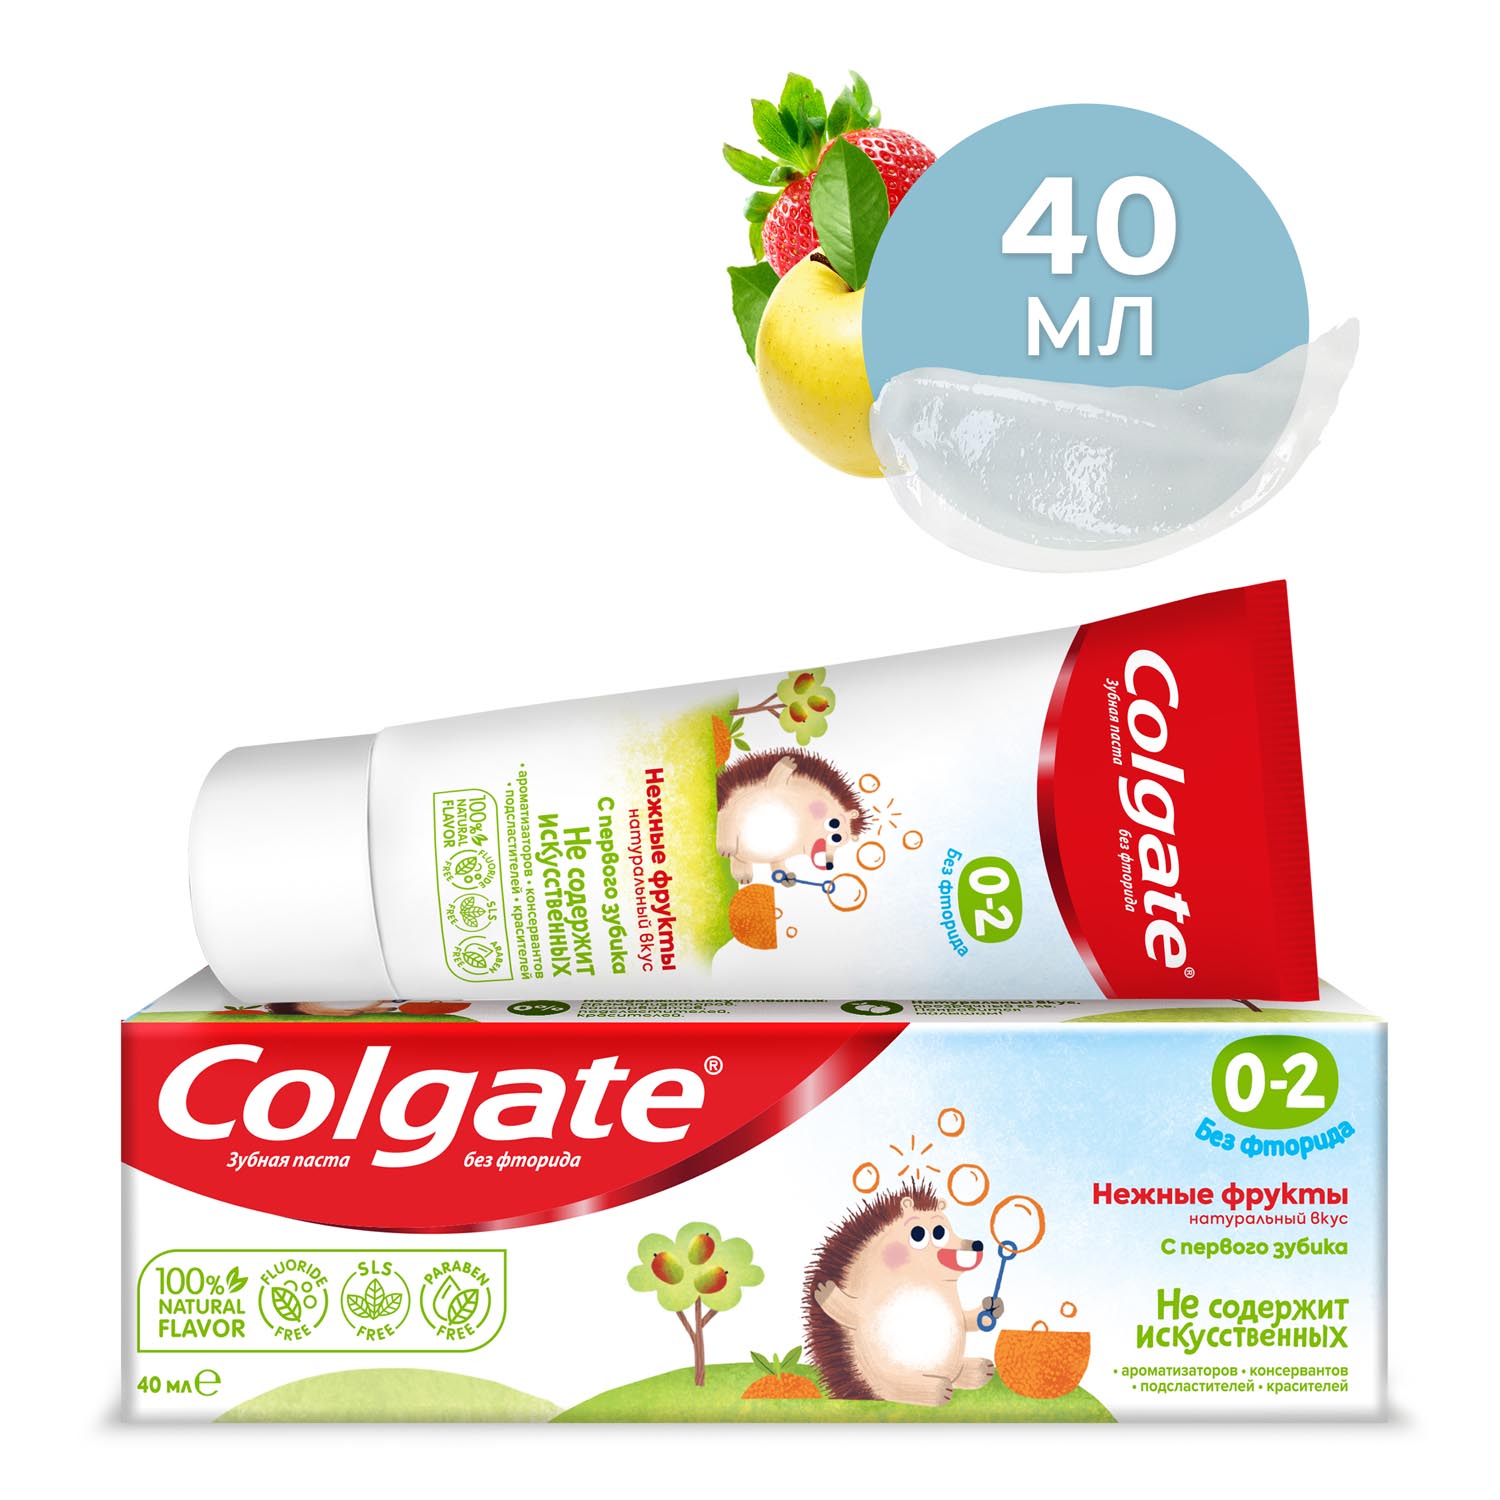 Зубная паста детская Colgate 0-2, без фторида, для детей от 0 до 2 лет, со вкусом нежных фруктов, 40 мл kids детская гелевая зубная паста ледяной арбуз без фтора 65 г